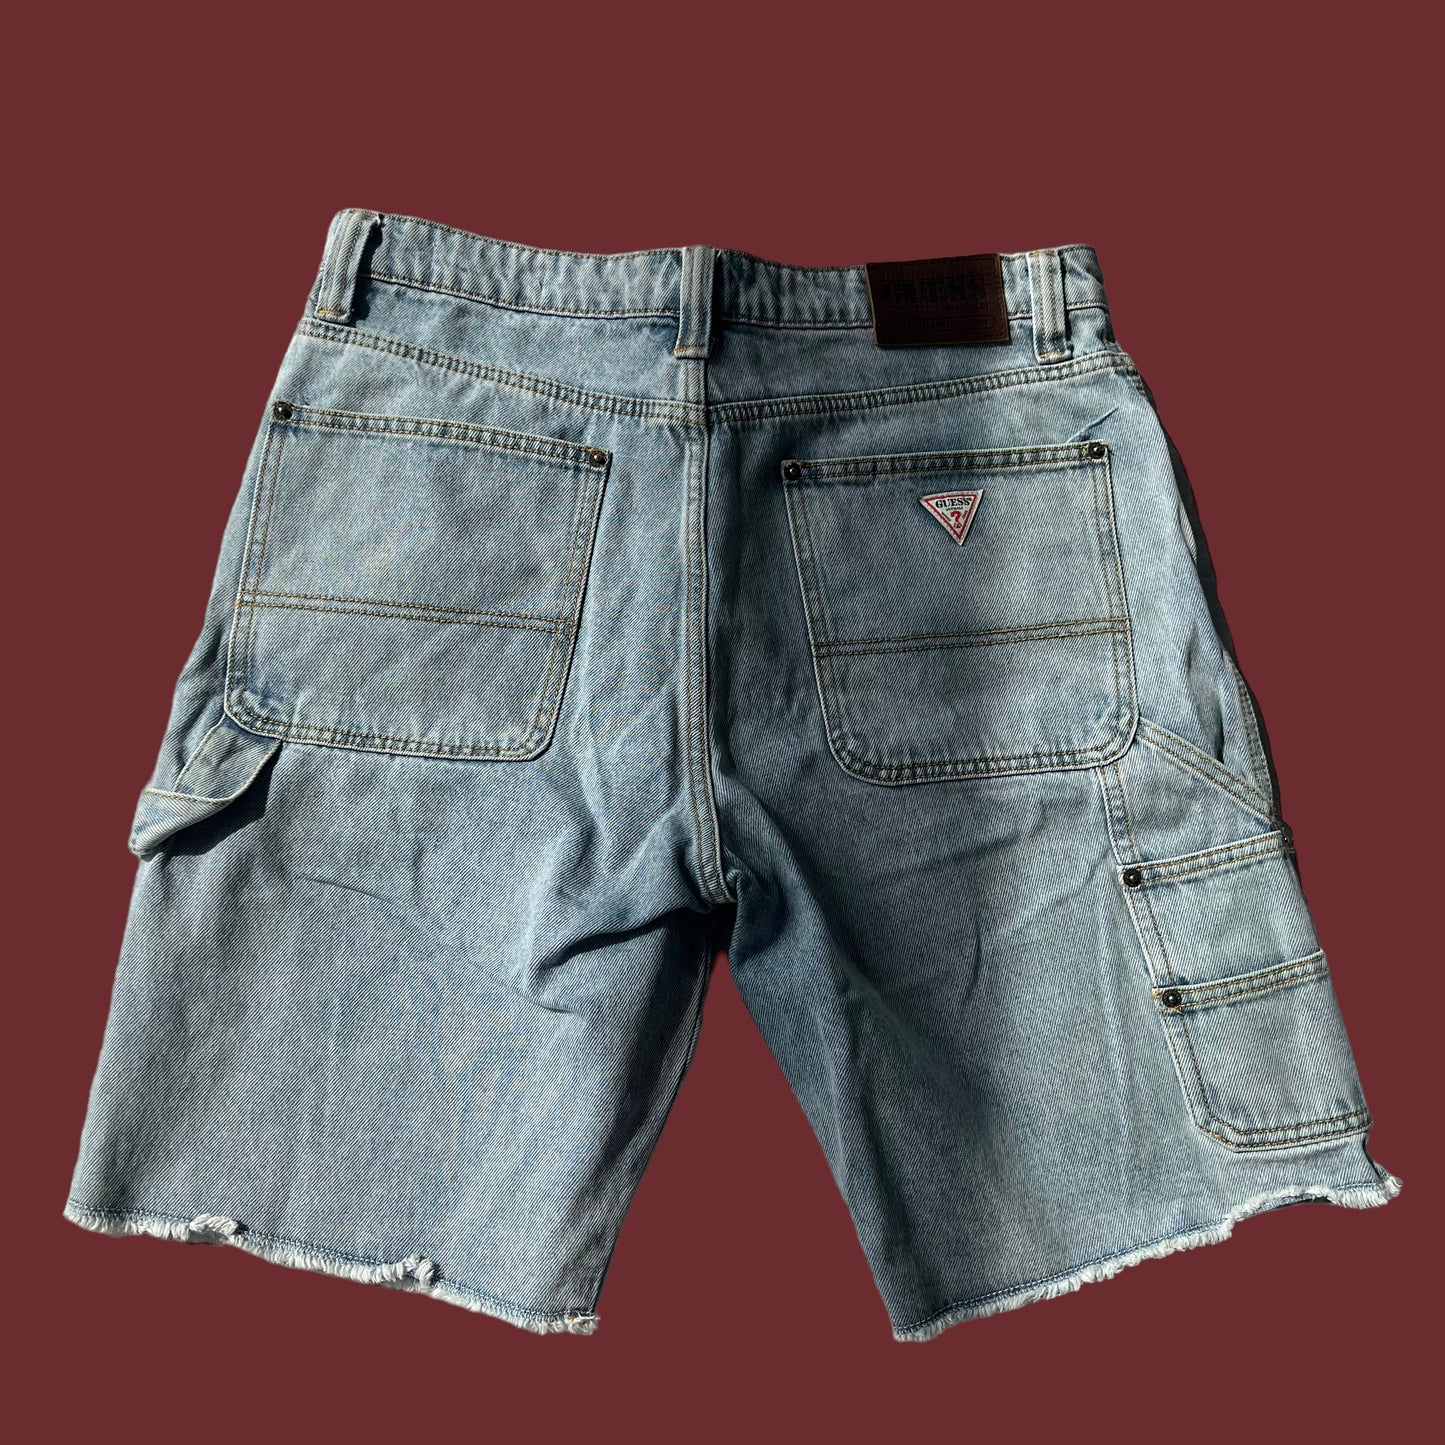 mens GUESS ORIGINALS jean shorts size medium